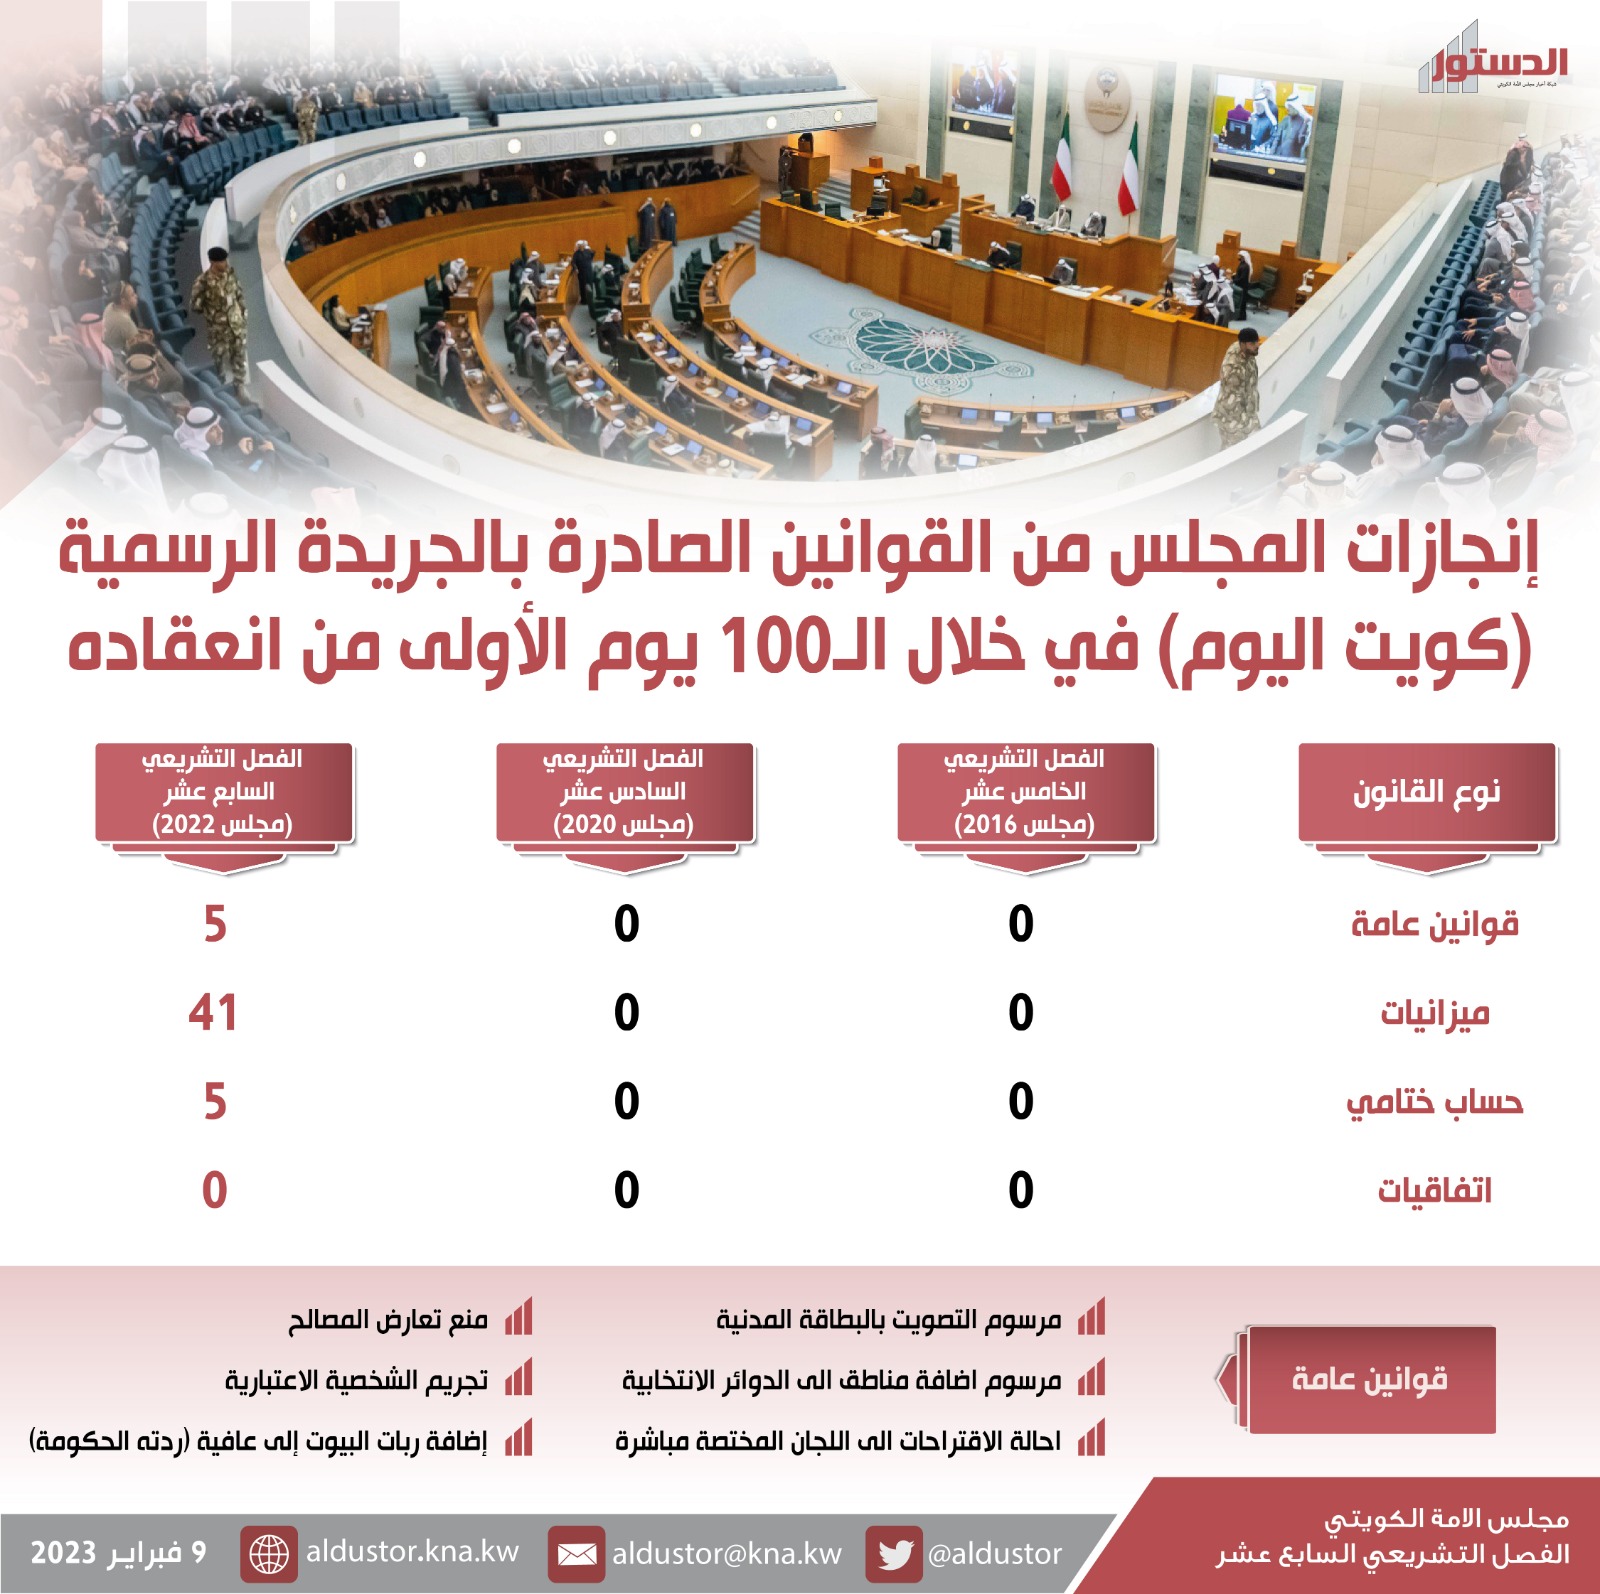 مجلس الأمة يقر 5 قوانين عامة و46 ميزانية وحسابا ختاميا